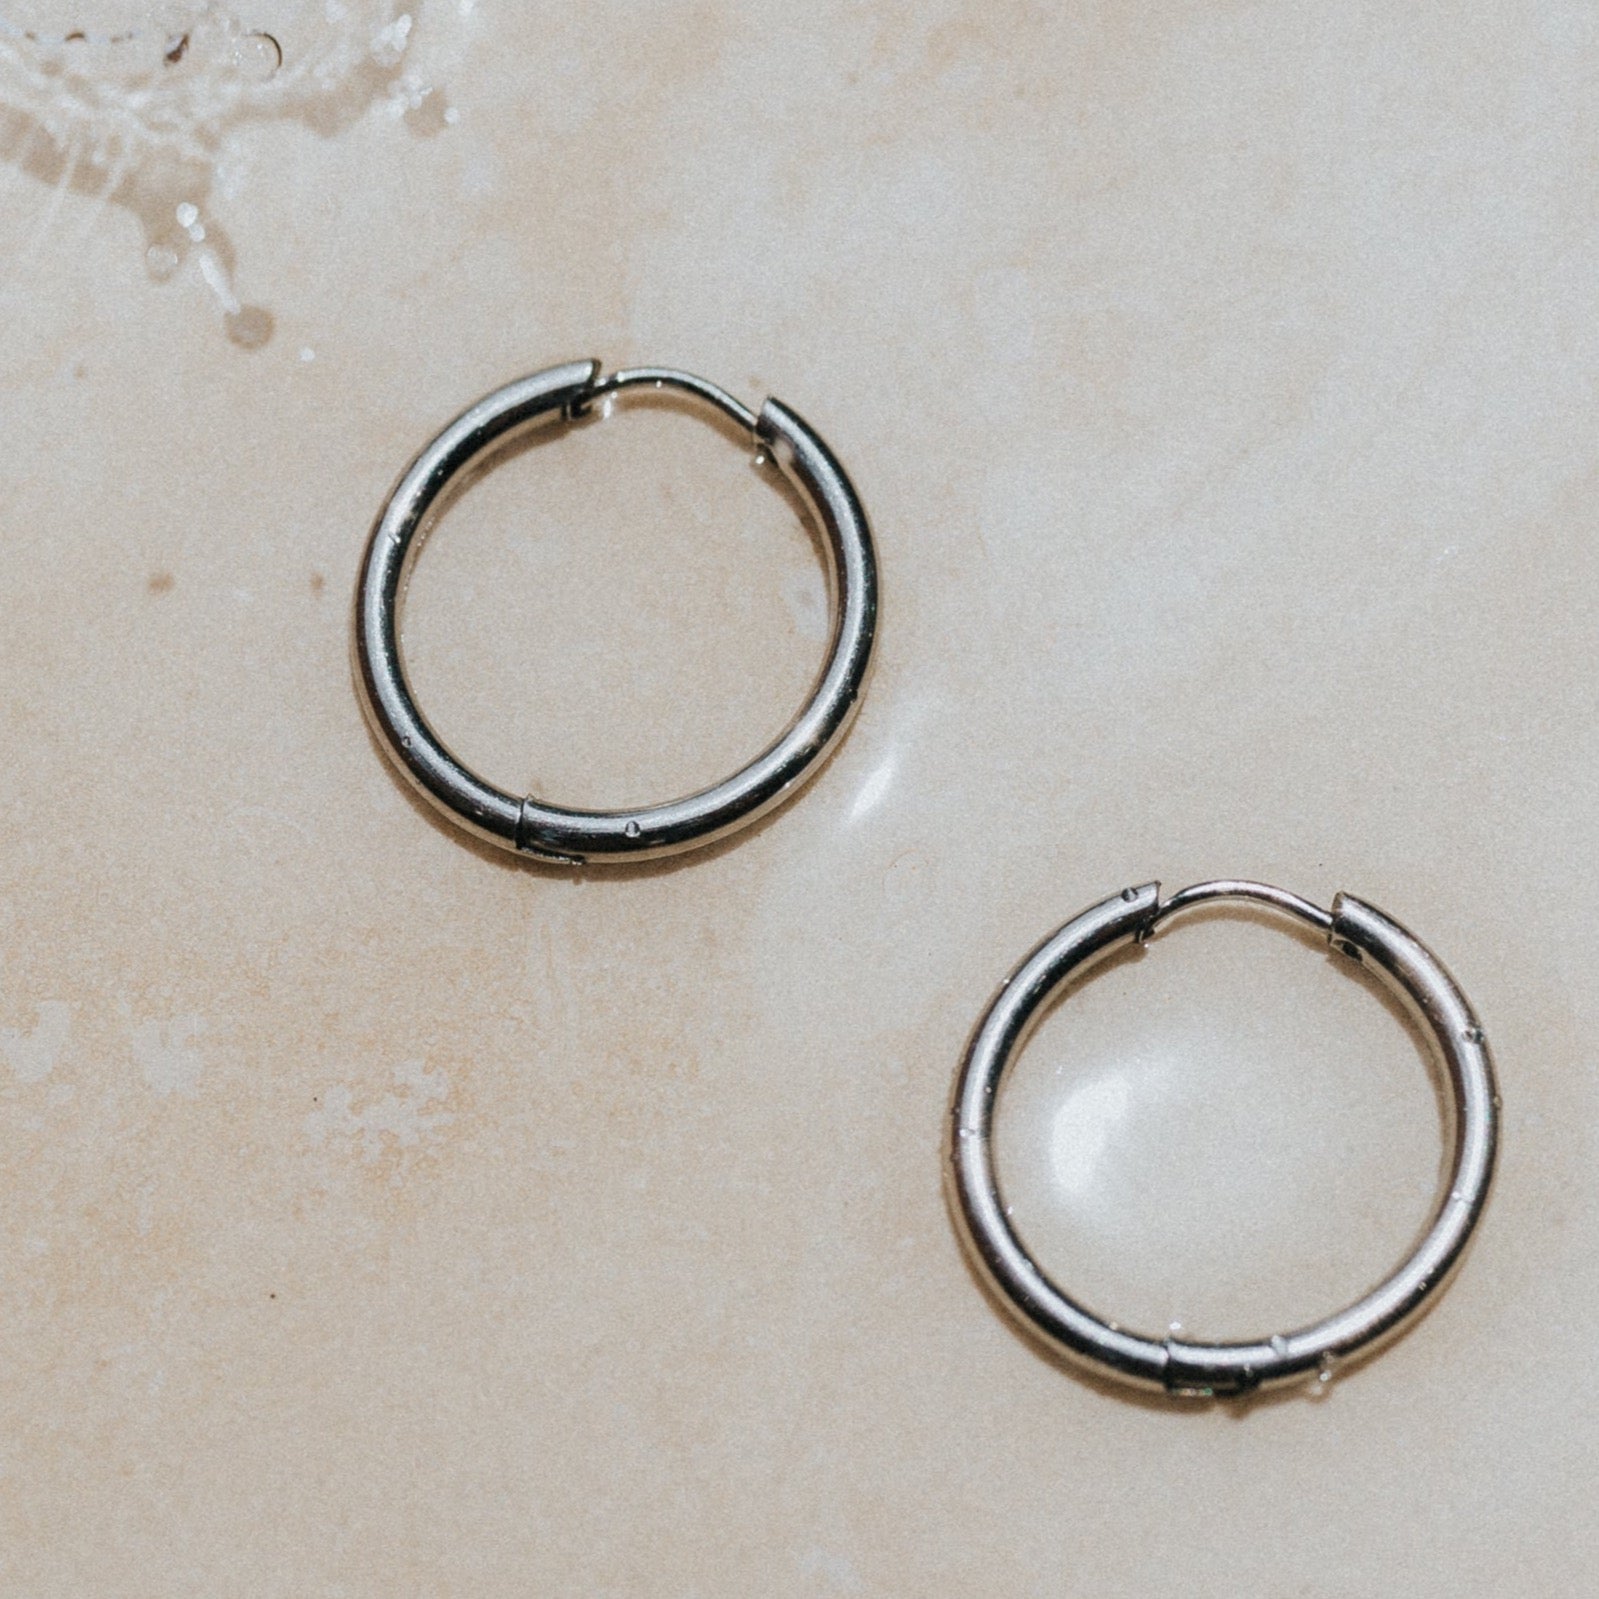 20mm silver waterproof earrings hoops for the ocean